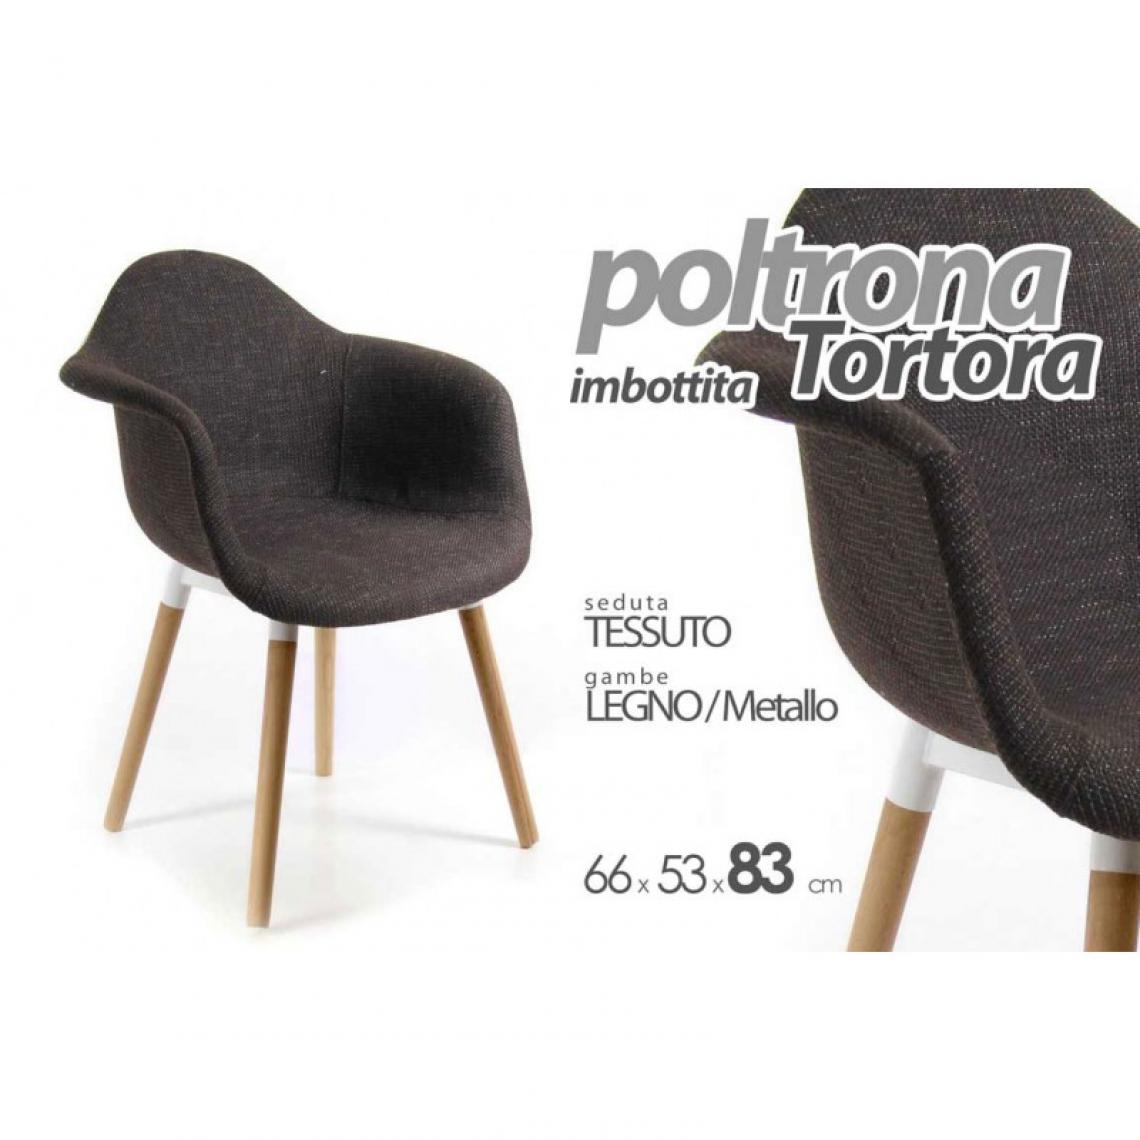 Webmarketpoint - Fauteuil en tissu gris tourterelle pieds bois fauteuil de bureau à domicile - Chaises